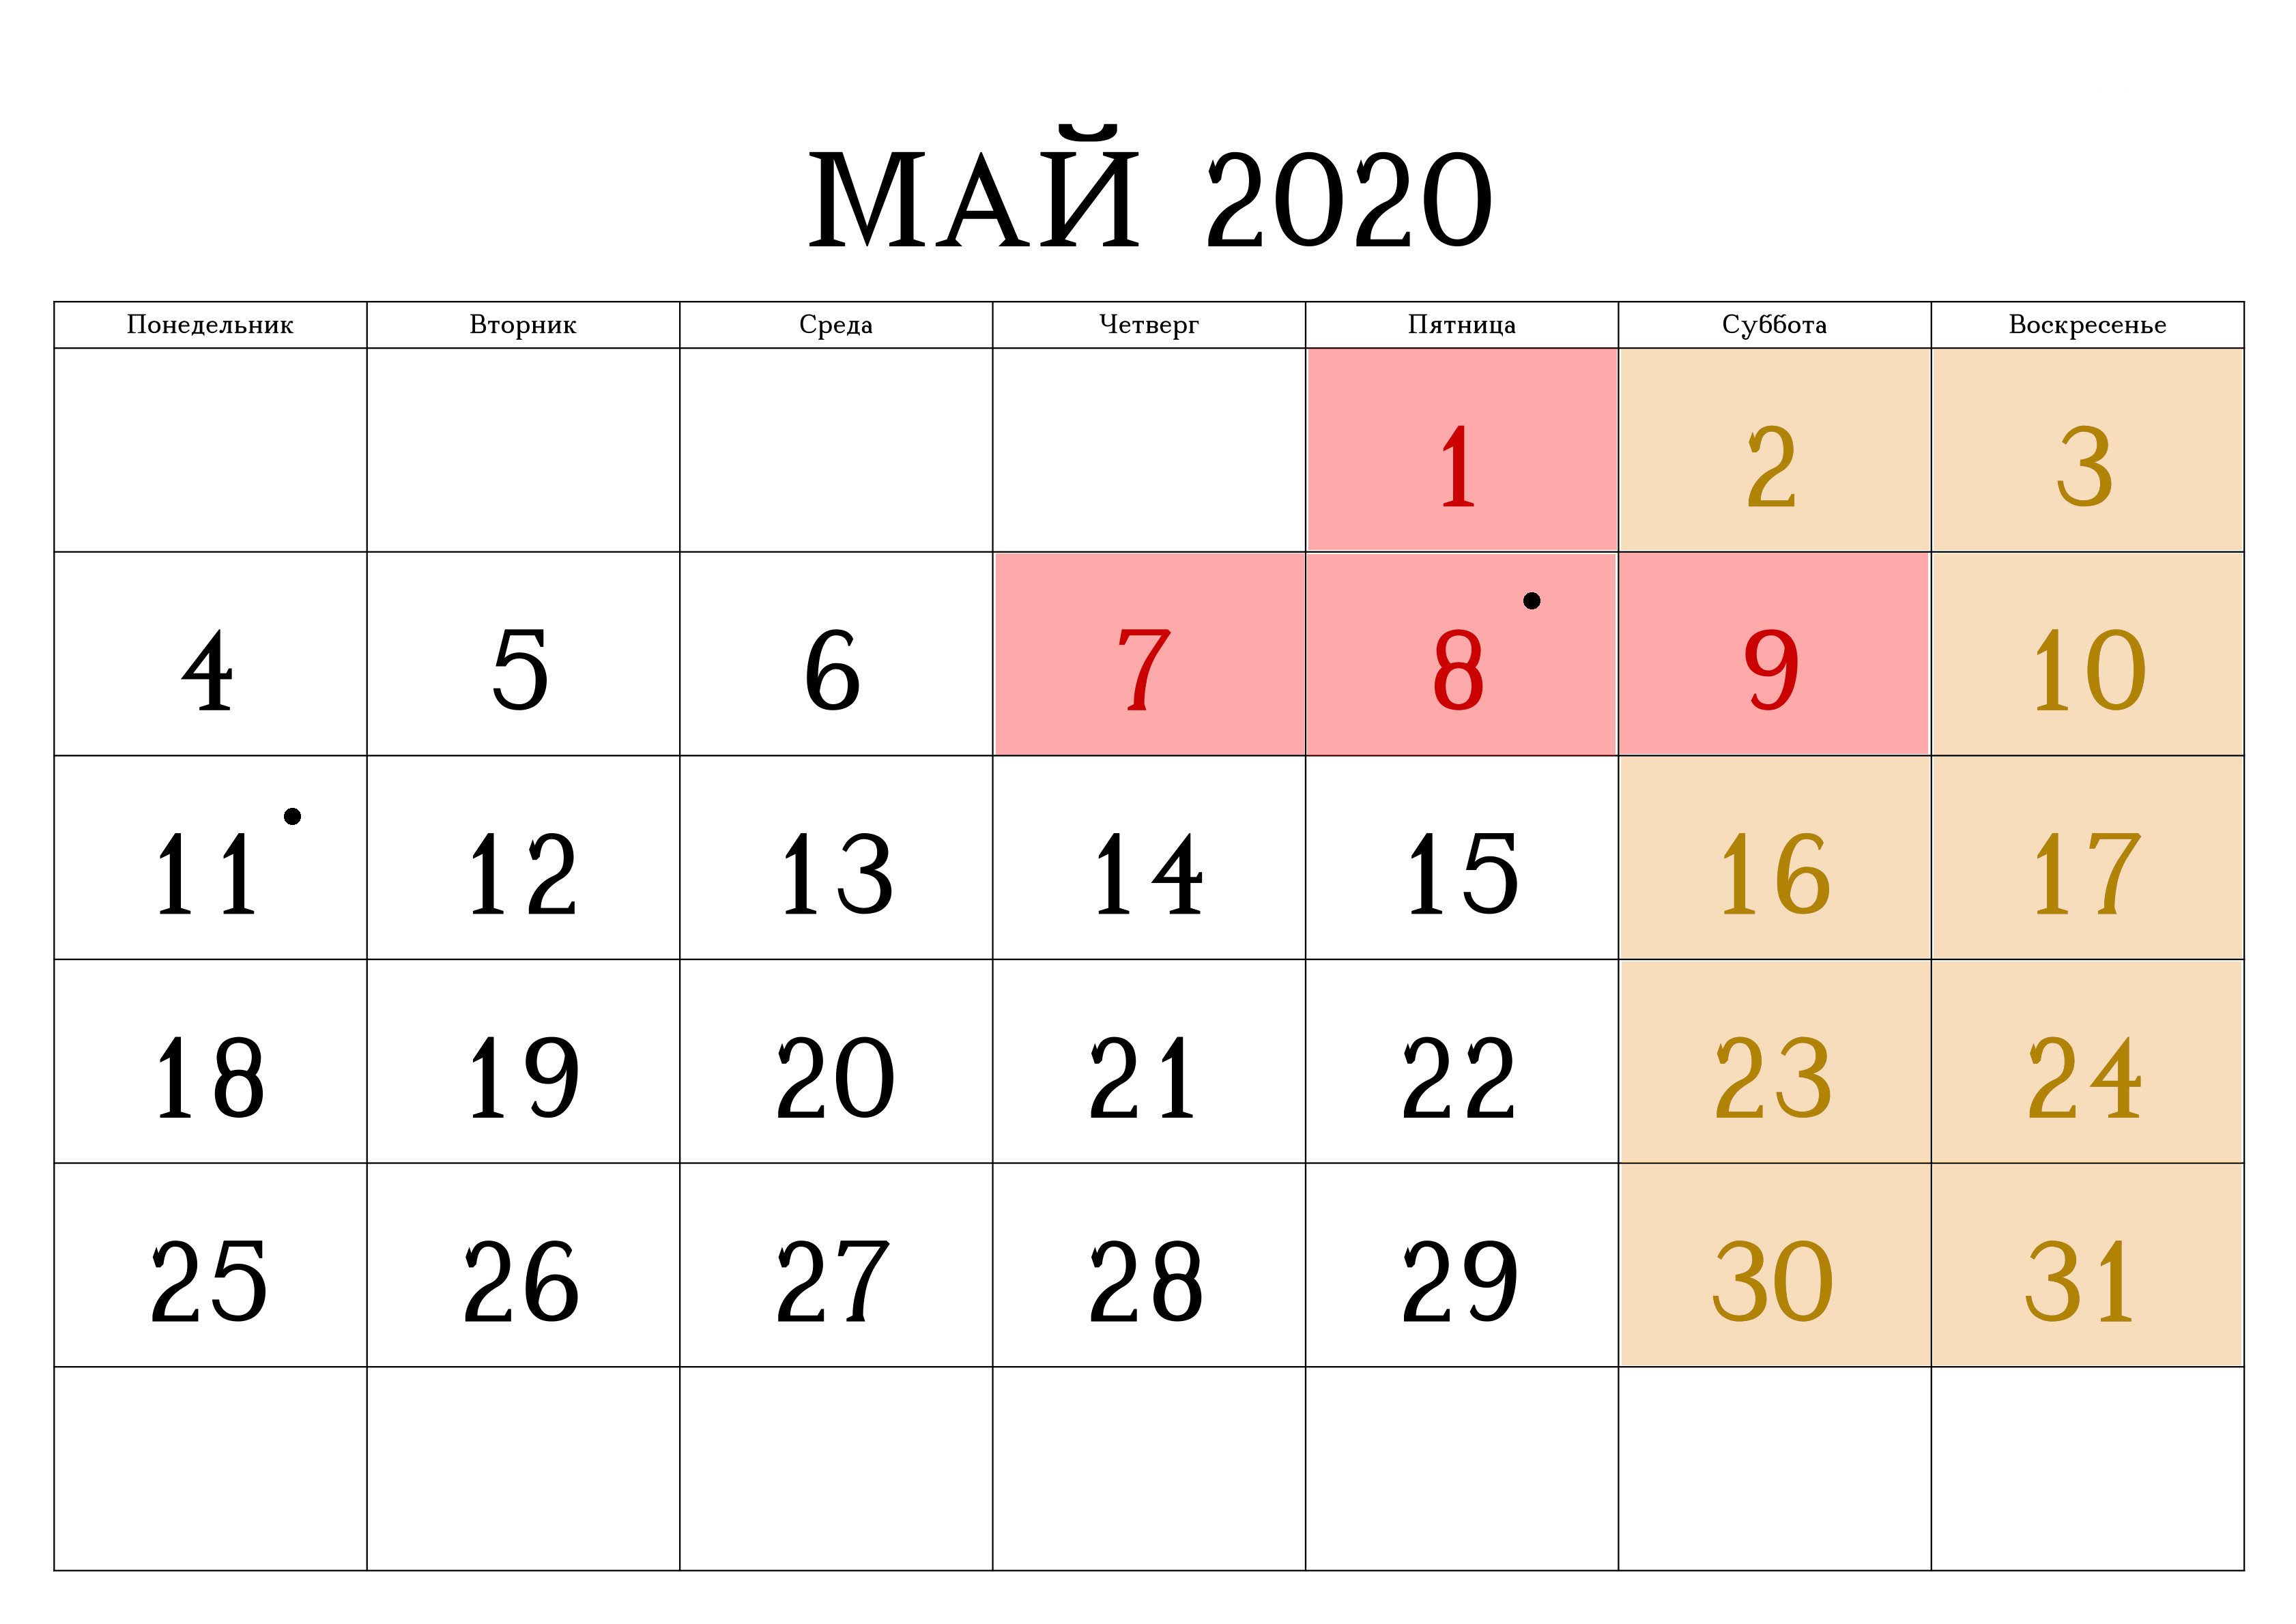 Изменения в мае 2020